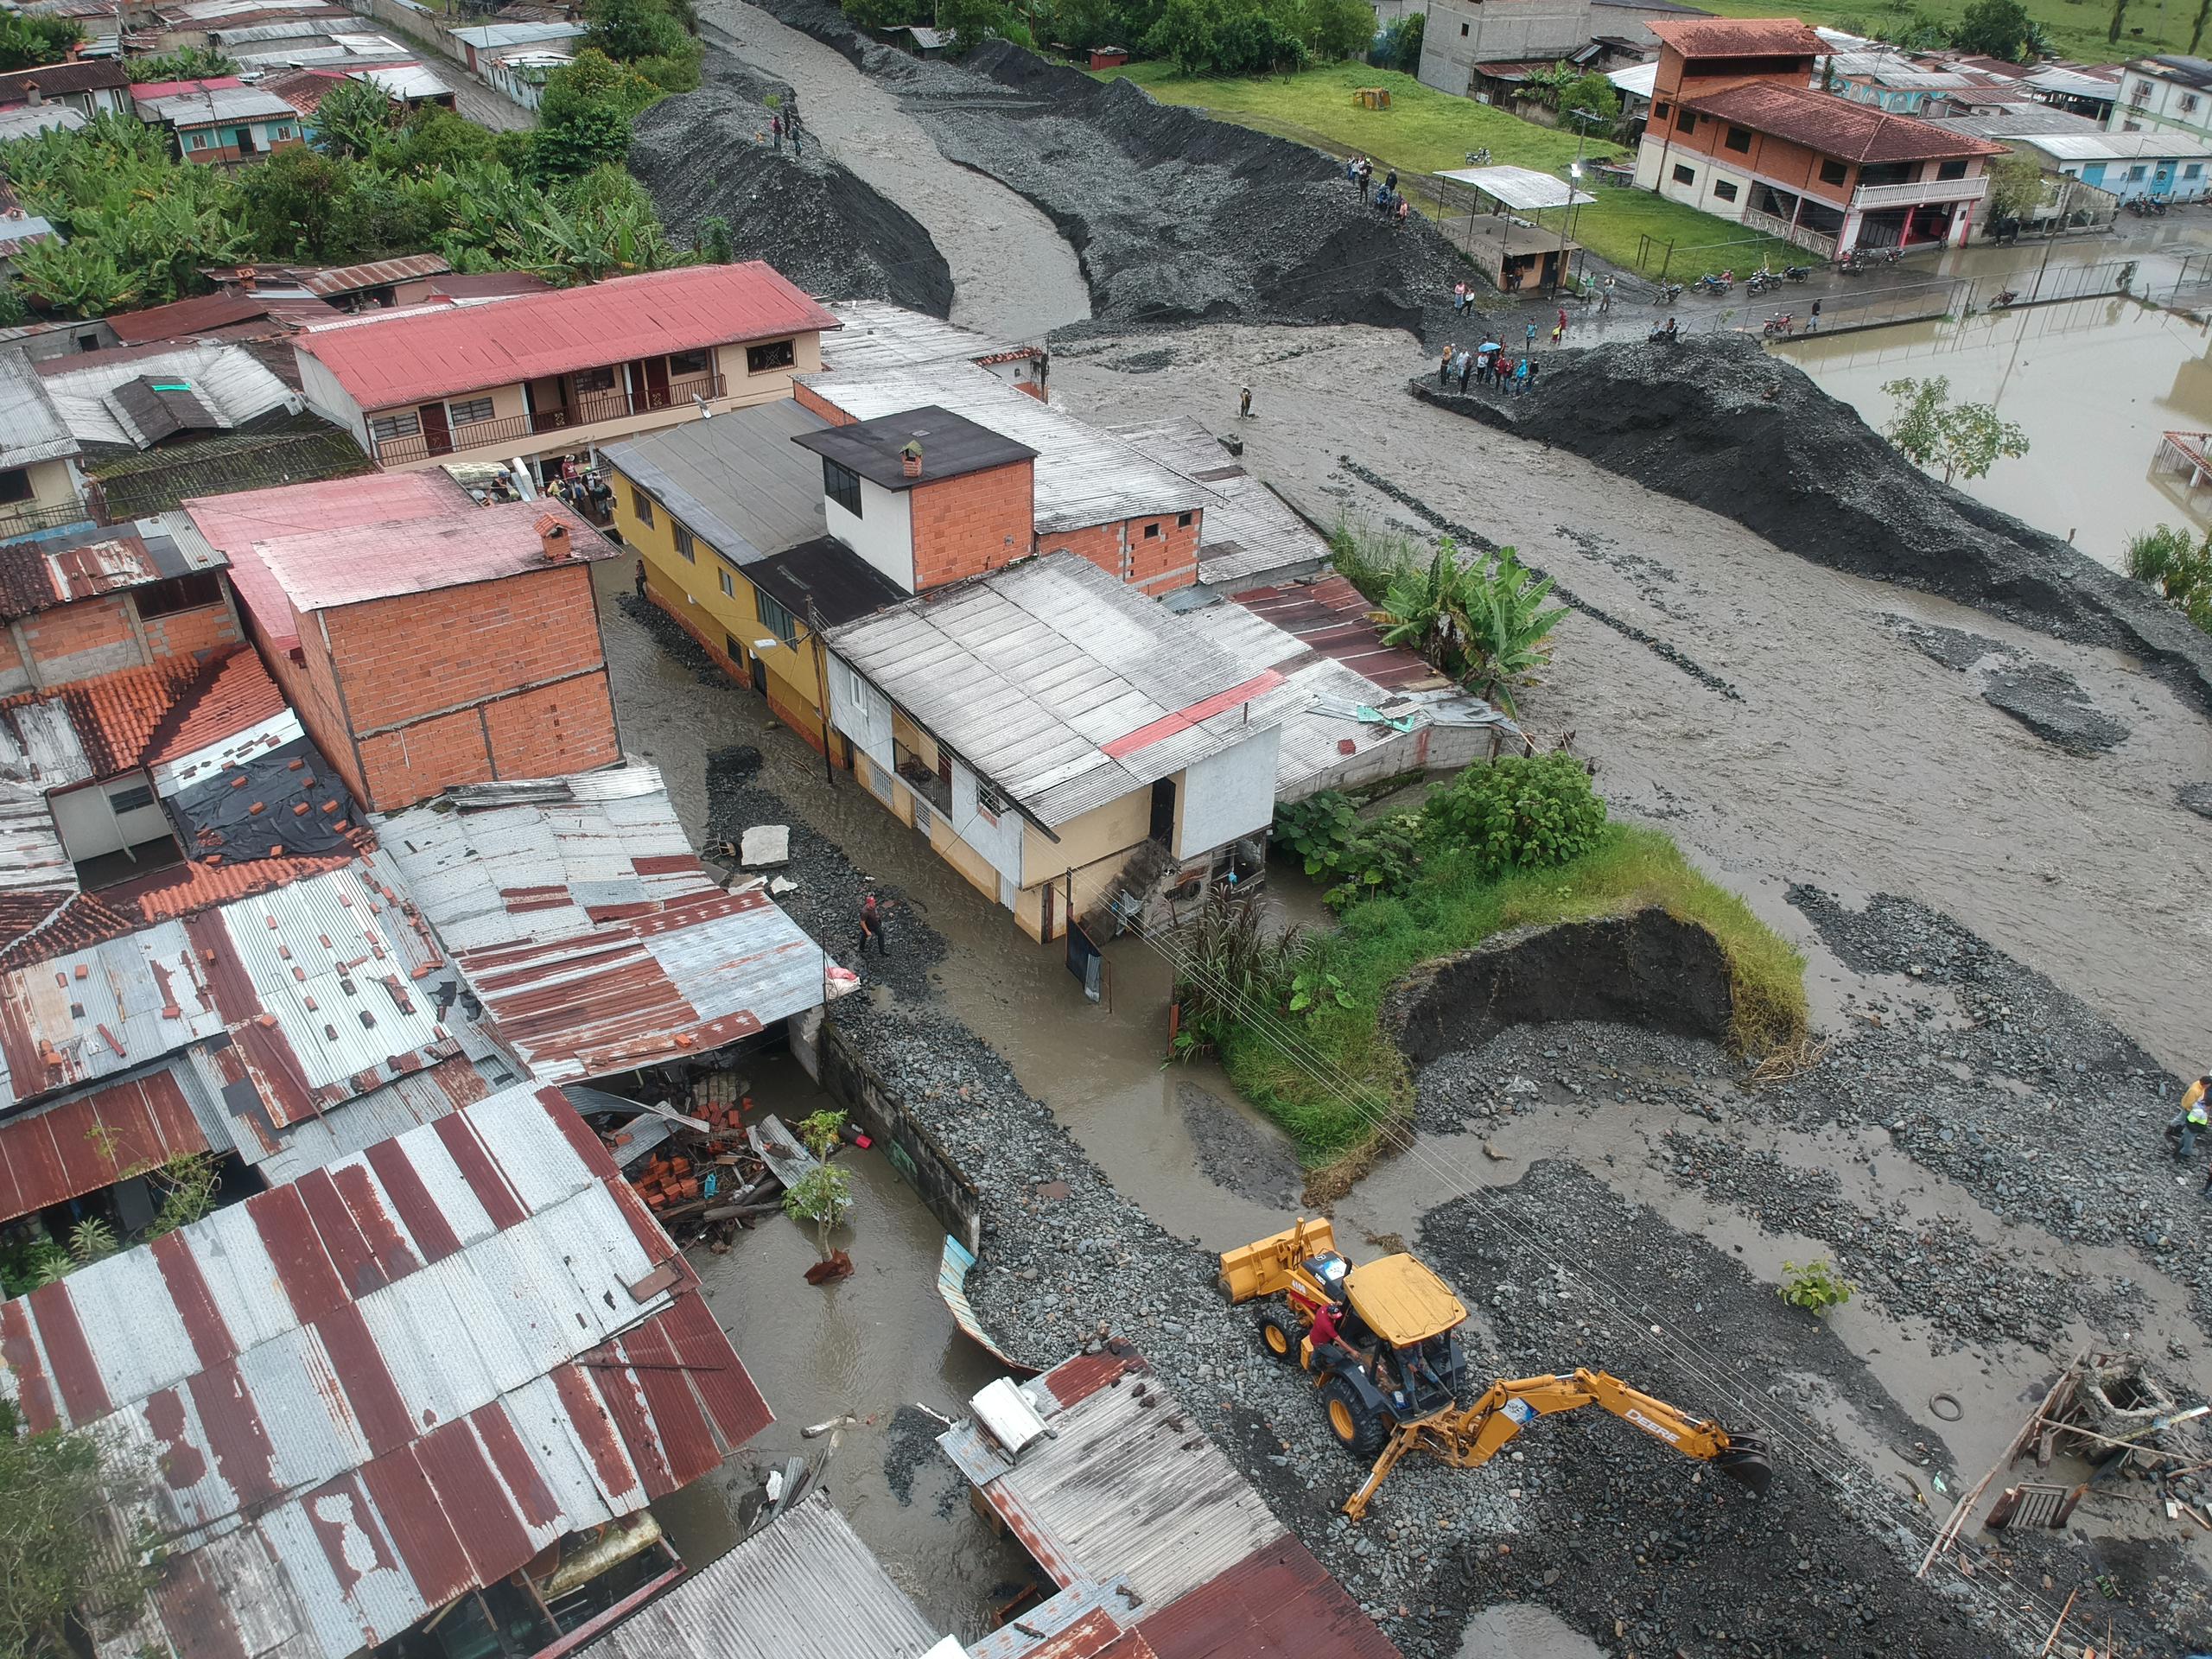 Alcalde de los Pueblos del Sur en Mérida pide maquinarias para atender emergencia por inundación